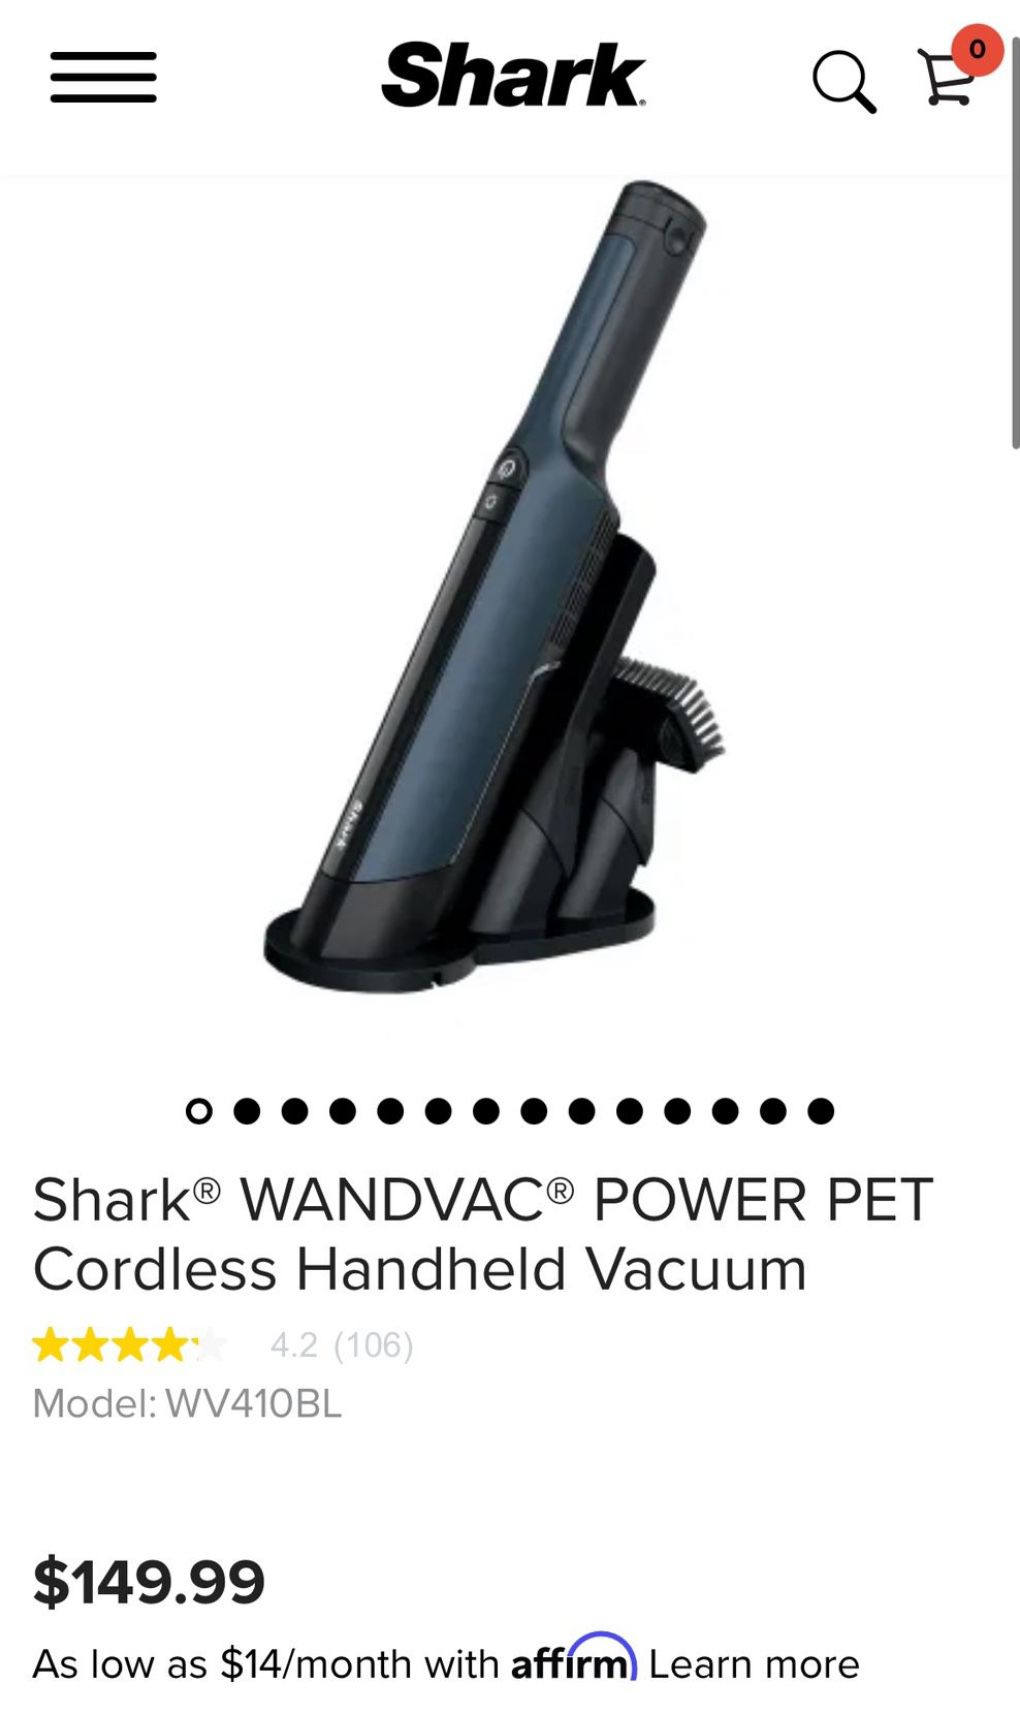 Shark WANDVAC POWER PET